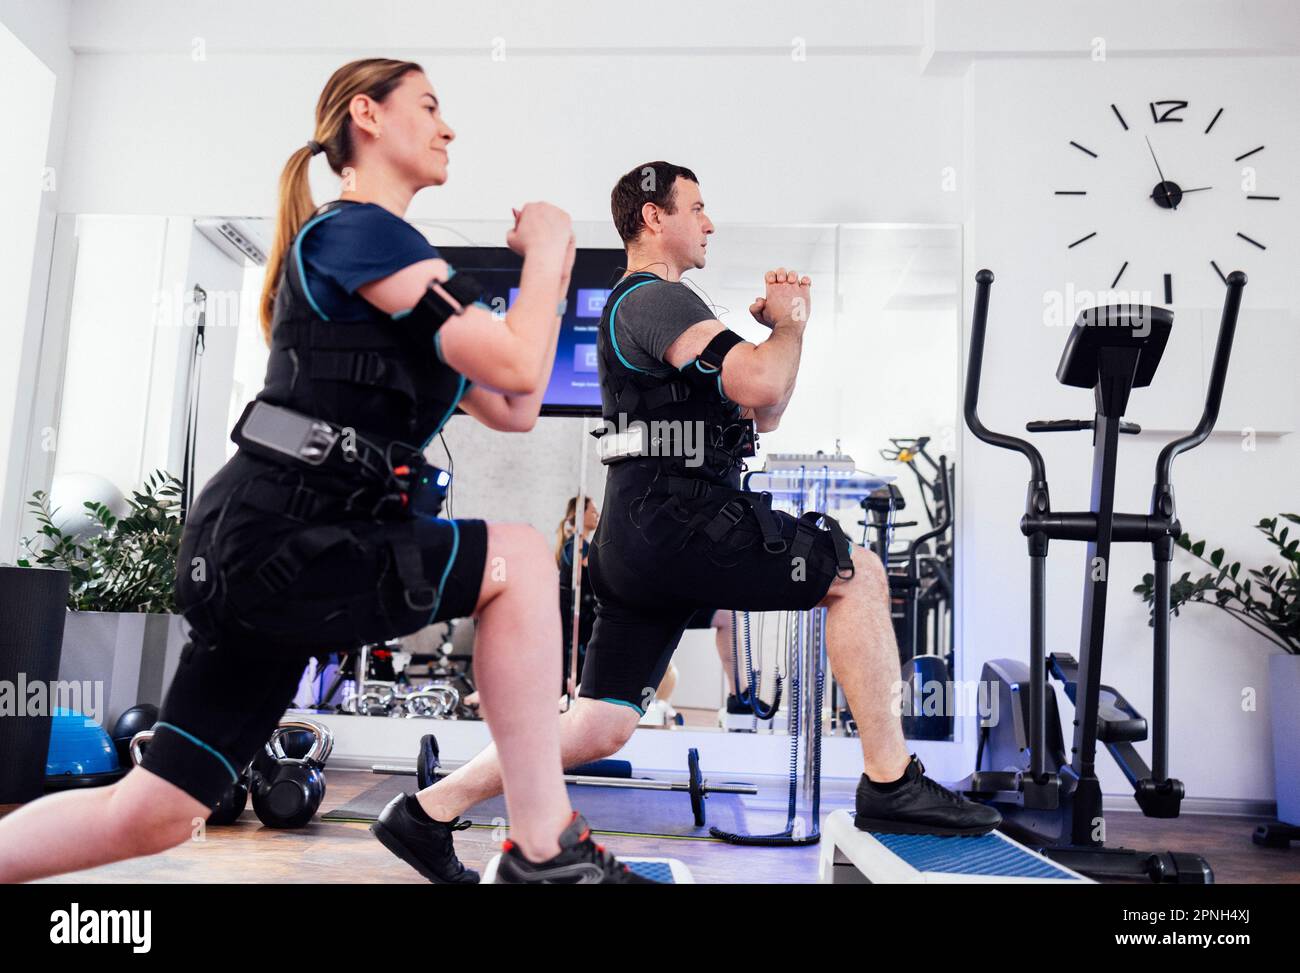 Sportpaar in ems-Anzügen ist körperlich im Fitnessclub oder Fitnessraum aktiv. Mann und Frau mit geballten Händen, die mit Step-pla nach vorne Ausfallschritte machen Stockfoto